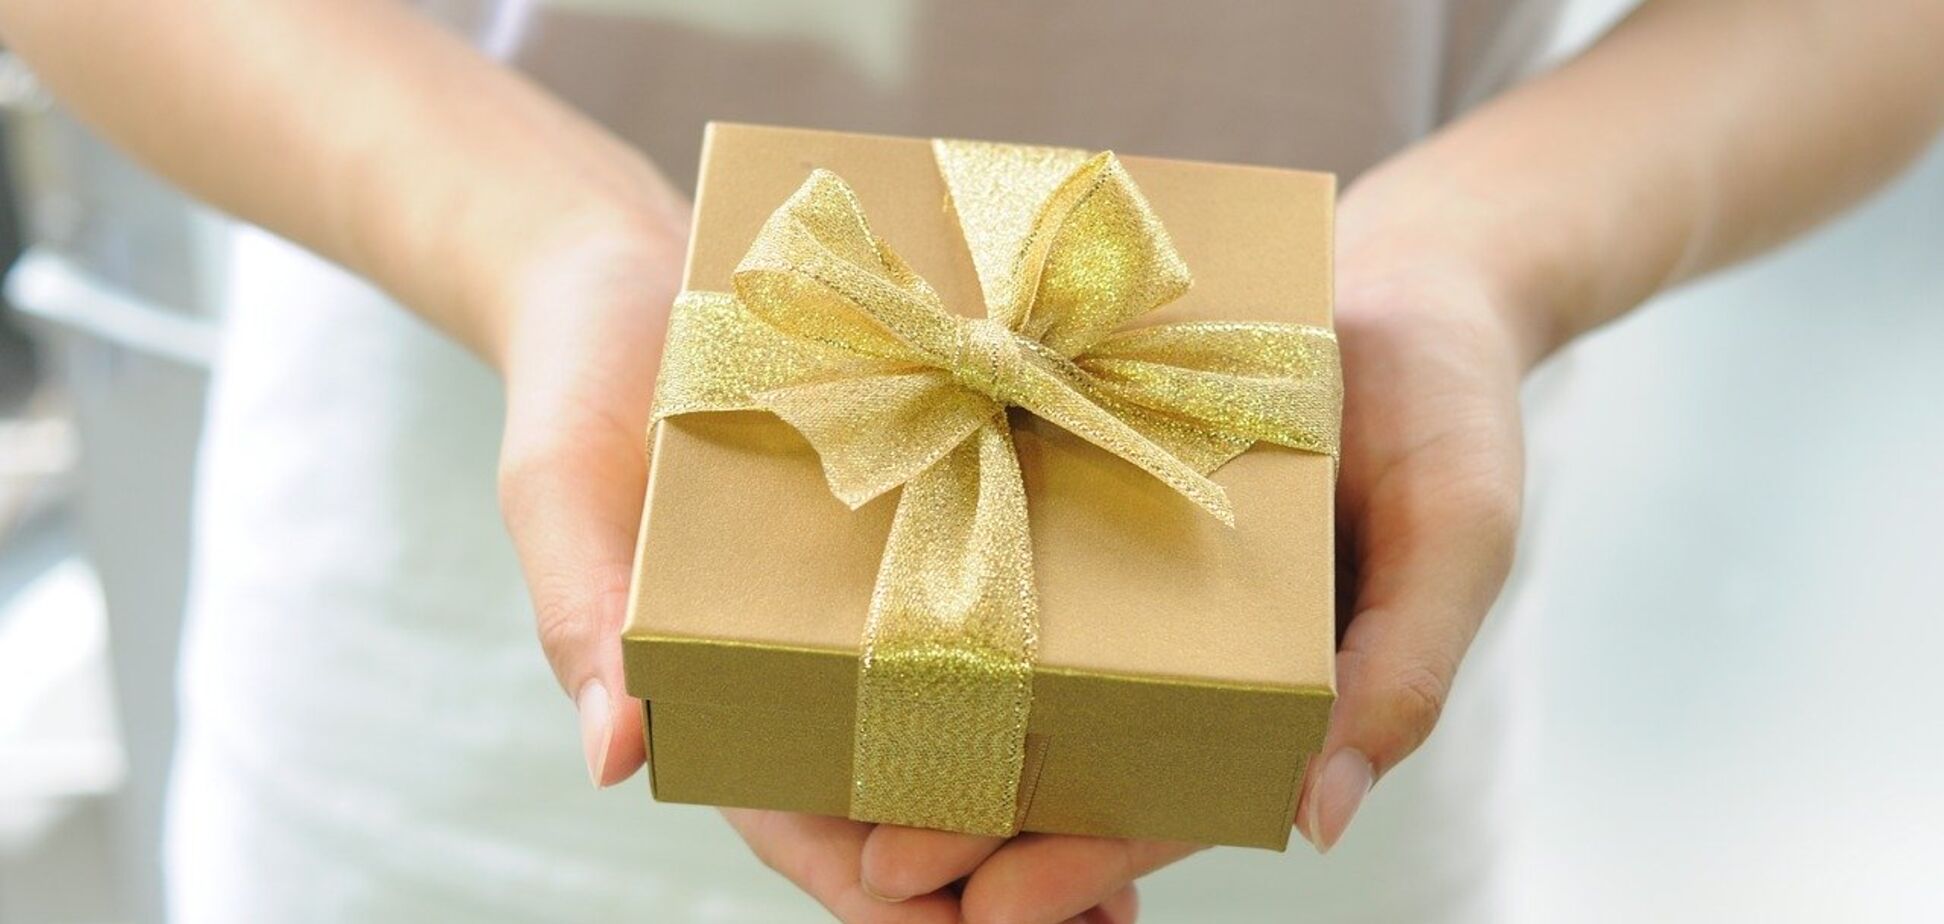 Найнезвичайніші подарунки на день народження, які піднімуть настрій: 10 ідей